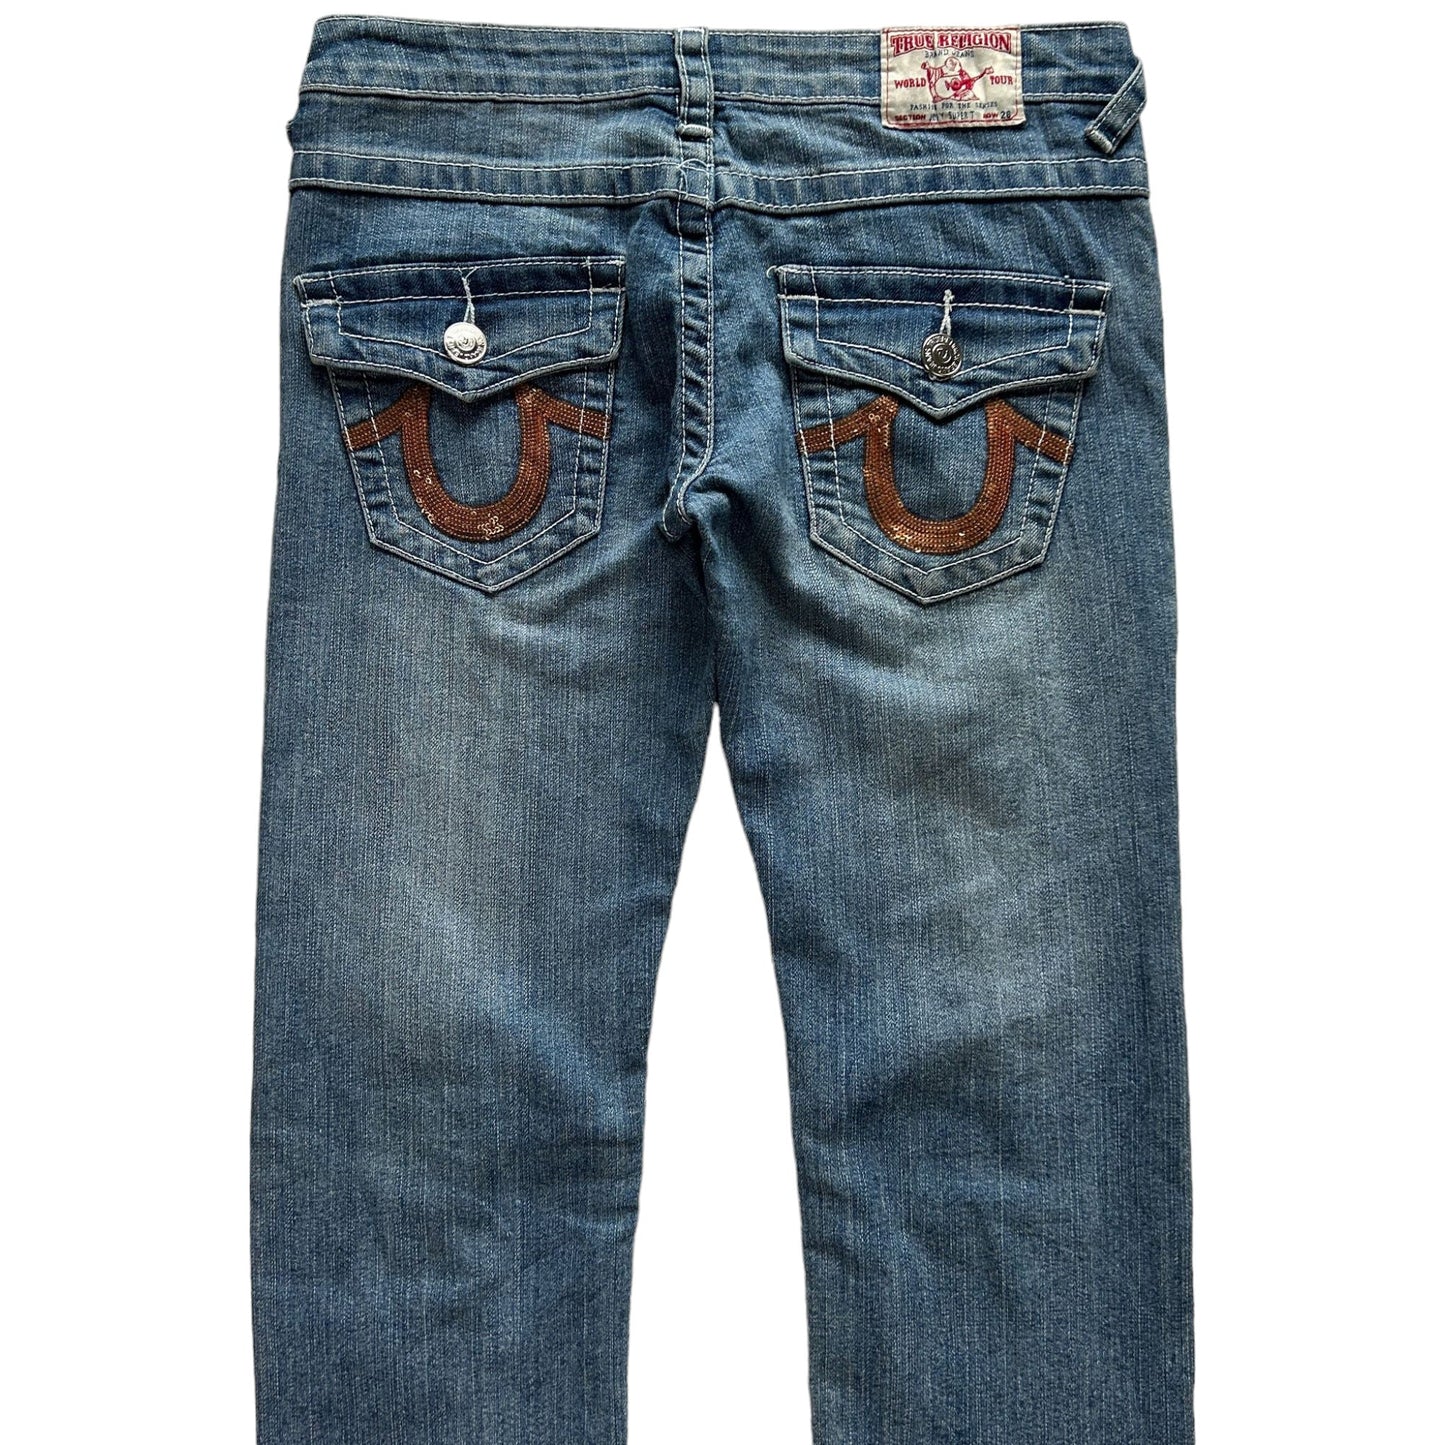 Vintage True Religion Sequin Denim Jeans Size W26